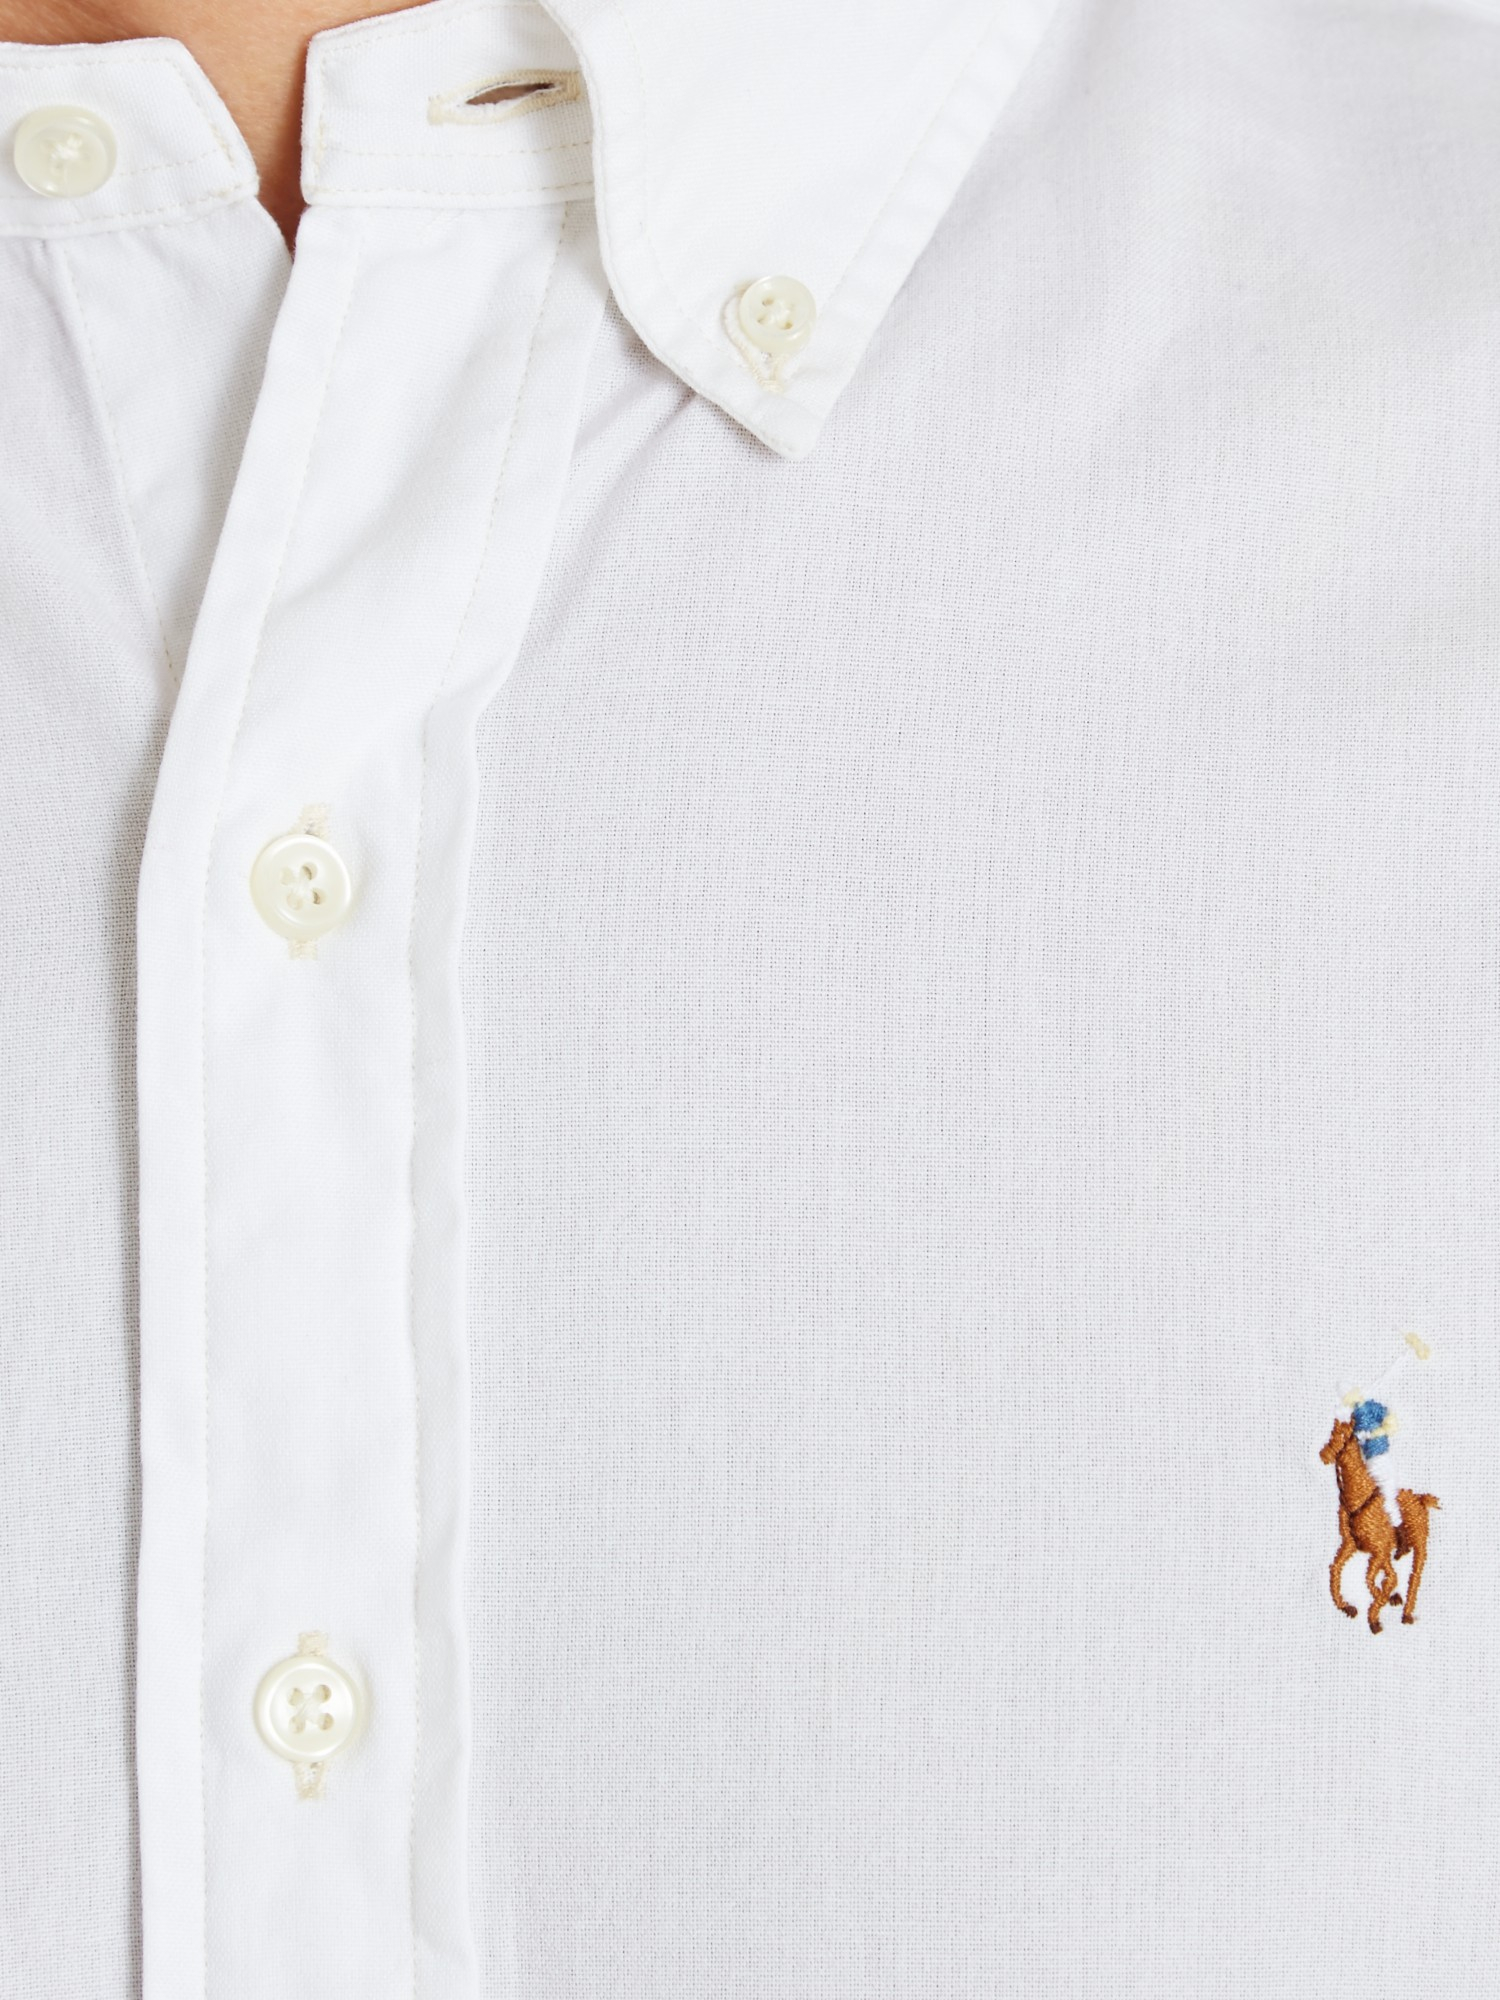 Polo Ralph Lauren Chambray Short Sleeve Shirt in White for Men - Lyst